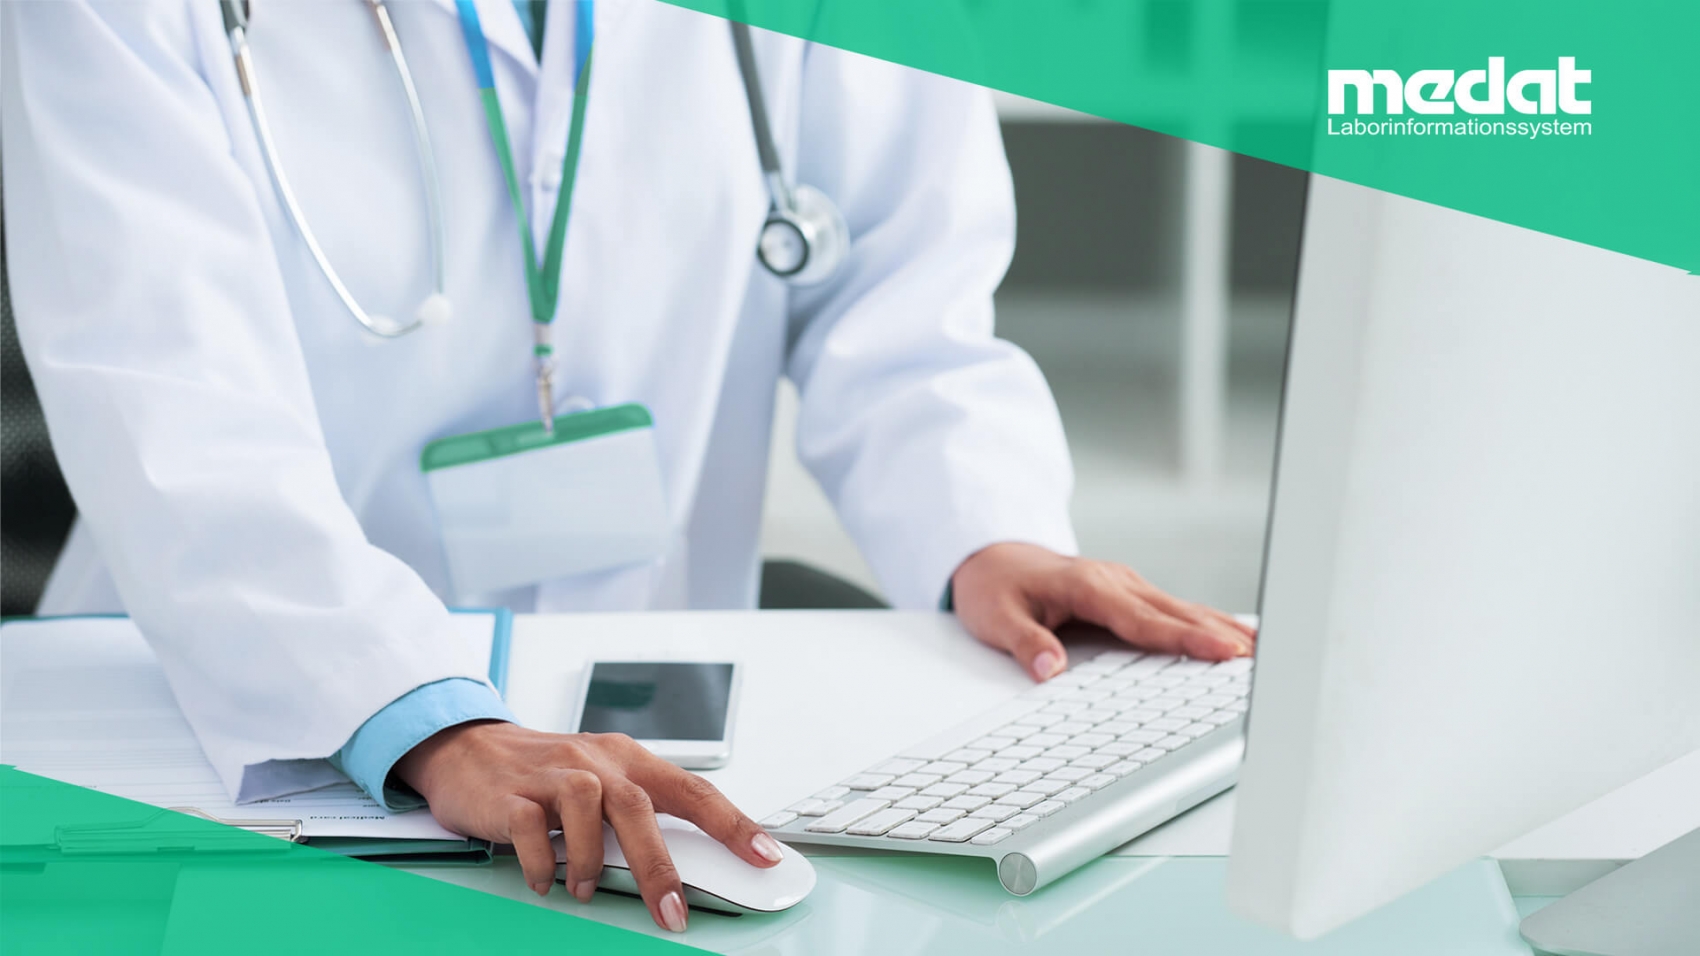 Nahaufnahme einer Ärztin mit Schlüsselkarte und Stethoskop, welche gerade an einem Rechner arbeitet. Neben der Tastatur liegen ein Handy und ein Klemmbrett mit einem Personalbogen. In der linken unteren Ecke befindet sich das Medat-Logo auf einem grünen Untergrund.